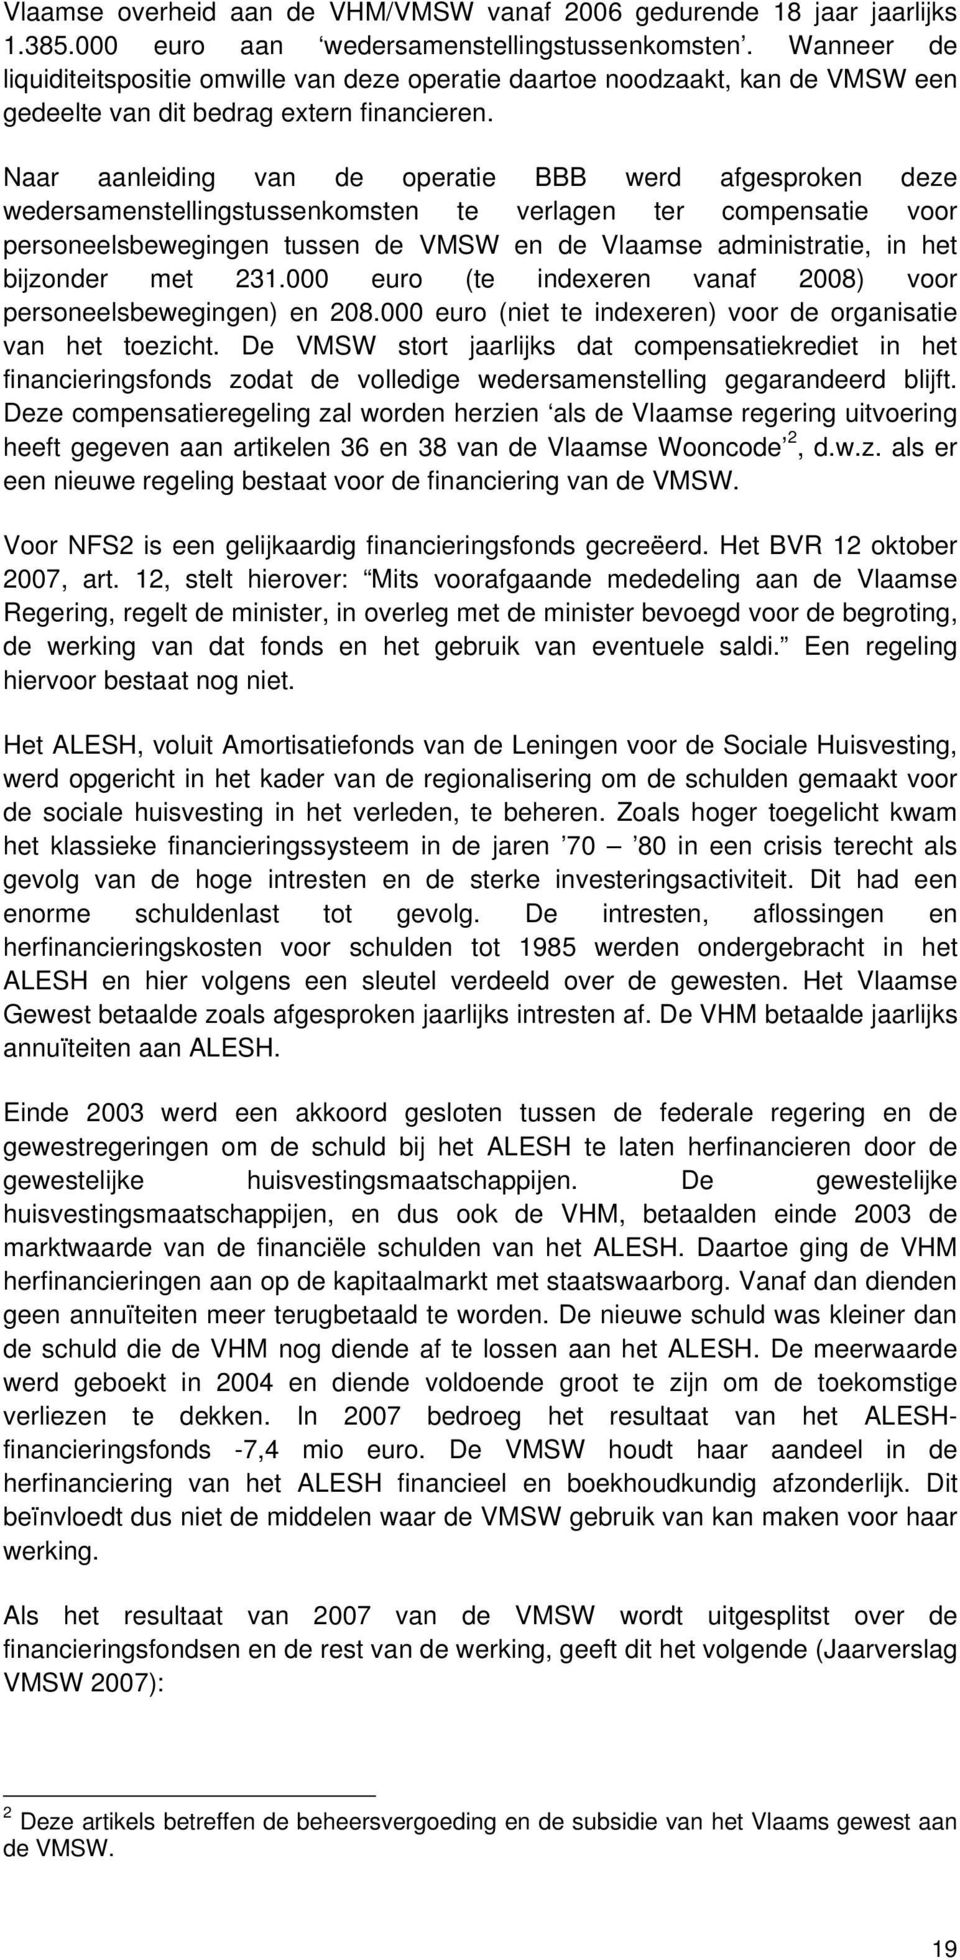 Naar aanleiding van de operatie BBB werd afgesproken deze wedersamenstellingstussenkomsten te verlagen ter compensatie voor personeelsbewegingen tussen de VMSW en de Vlaamse administratie, in het